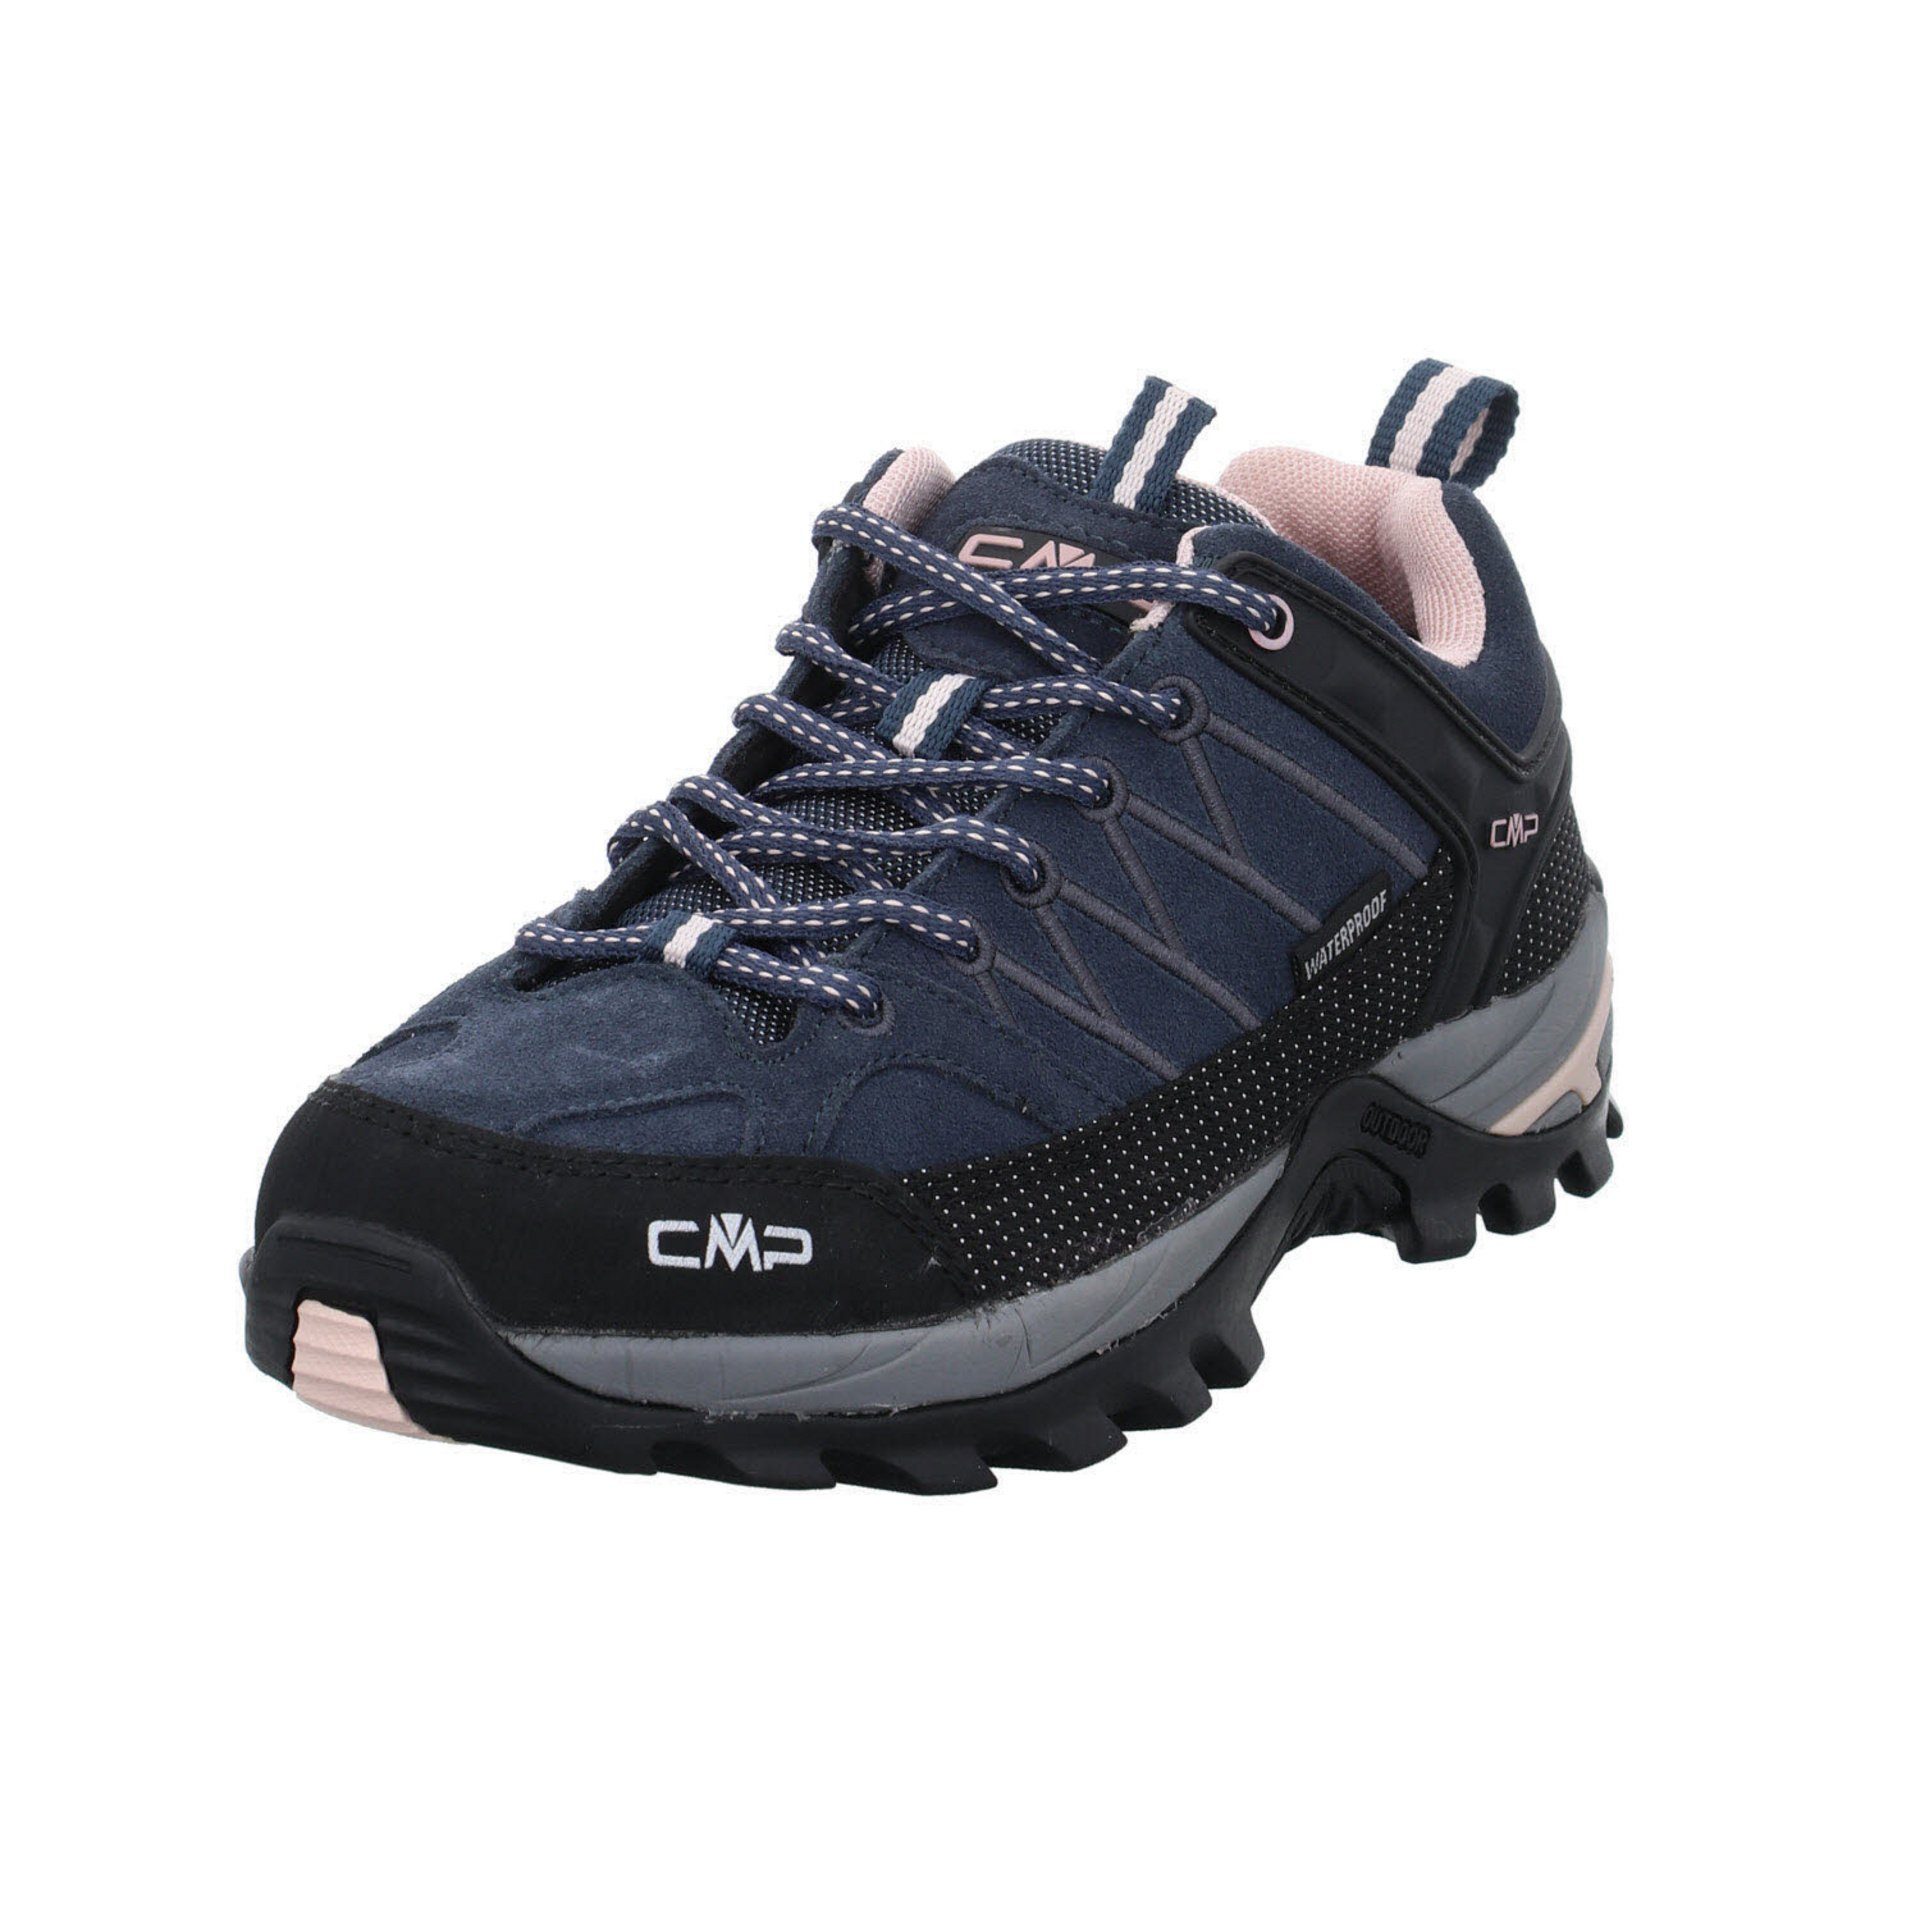 Outdoor Leder-/Textilkombination 53UG Schuhe ASPHALT-ANTRACITE-ROSE Outdoorschuh Outdoorschuh Low Riegel CMP Damen